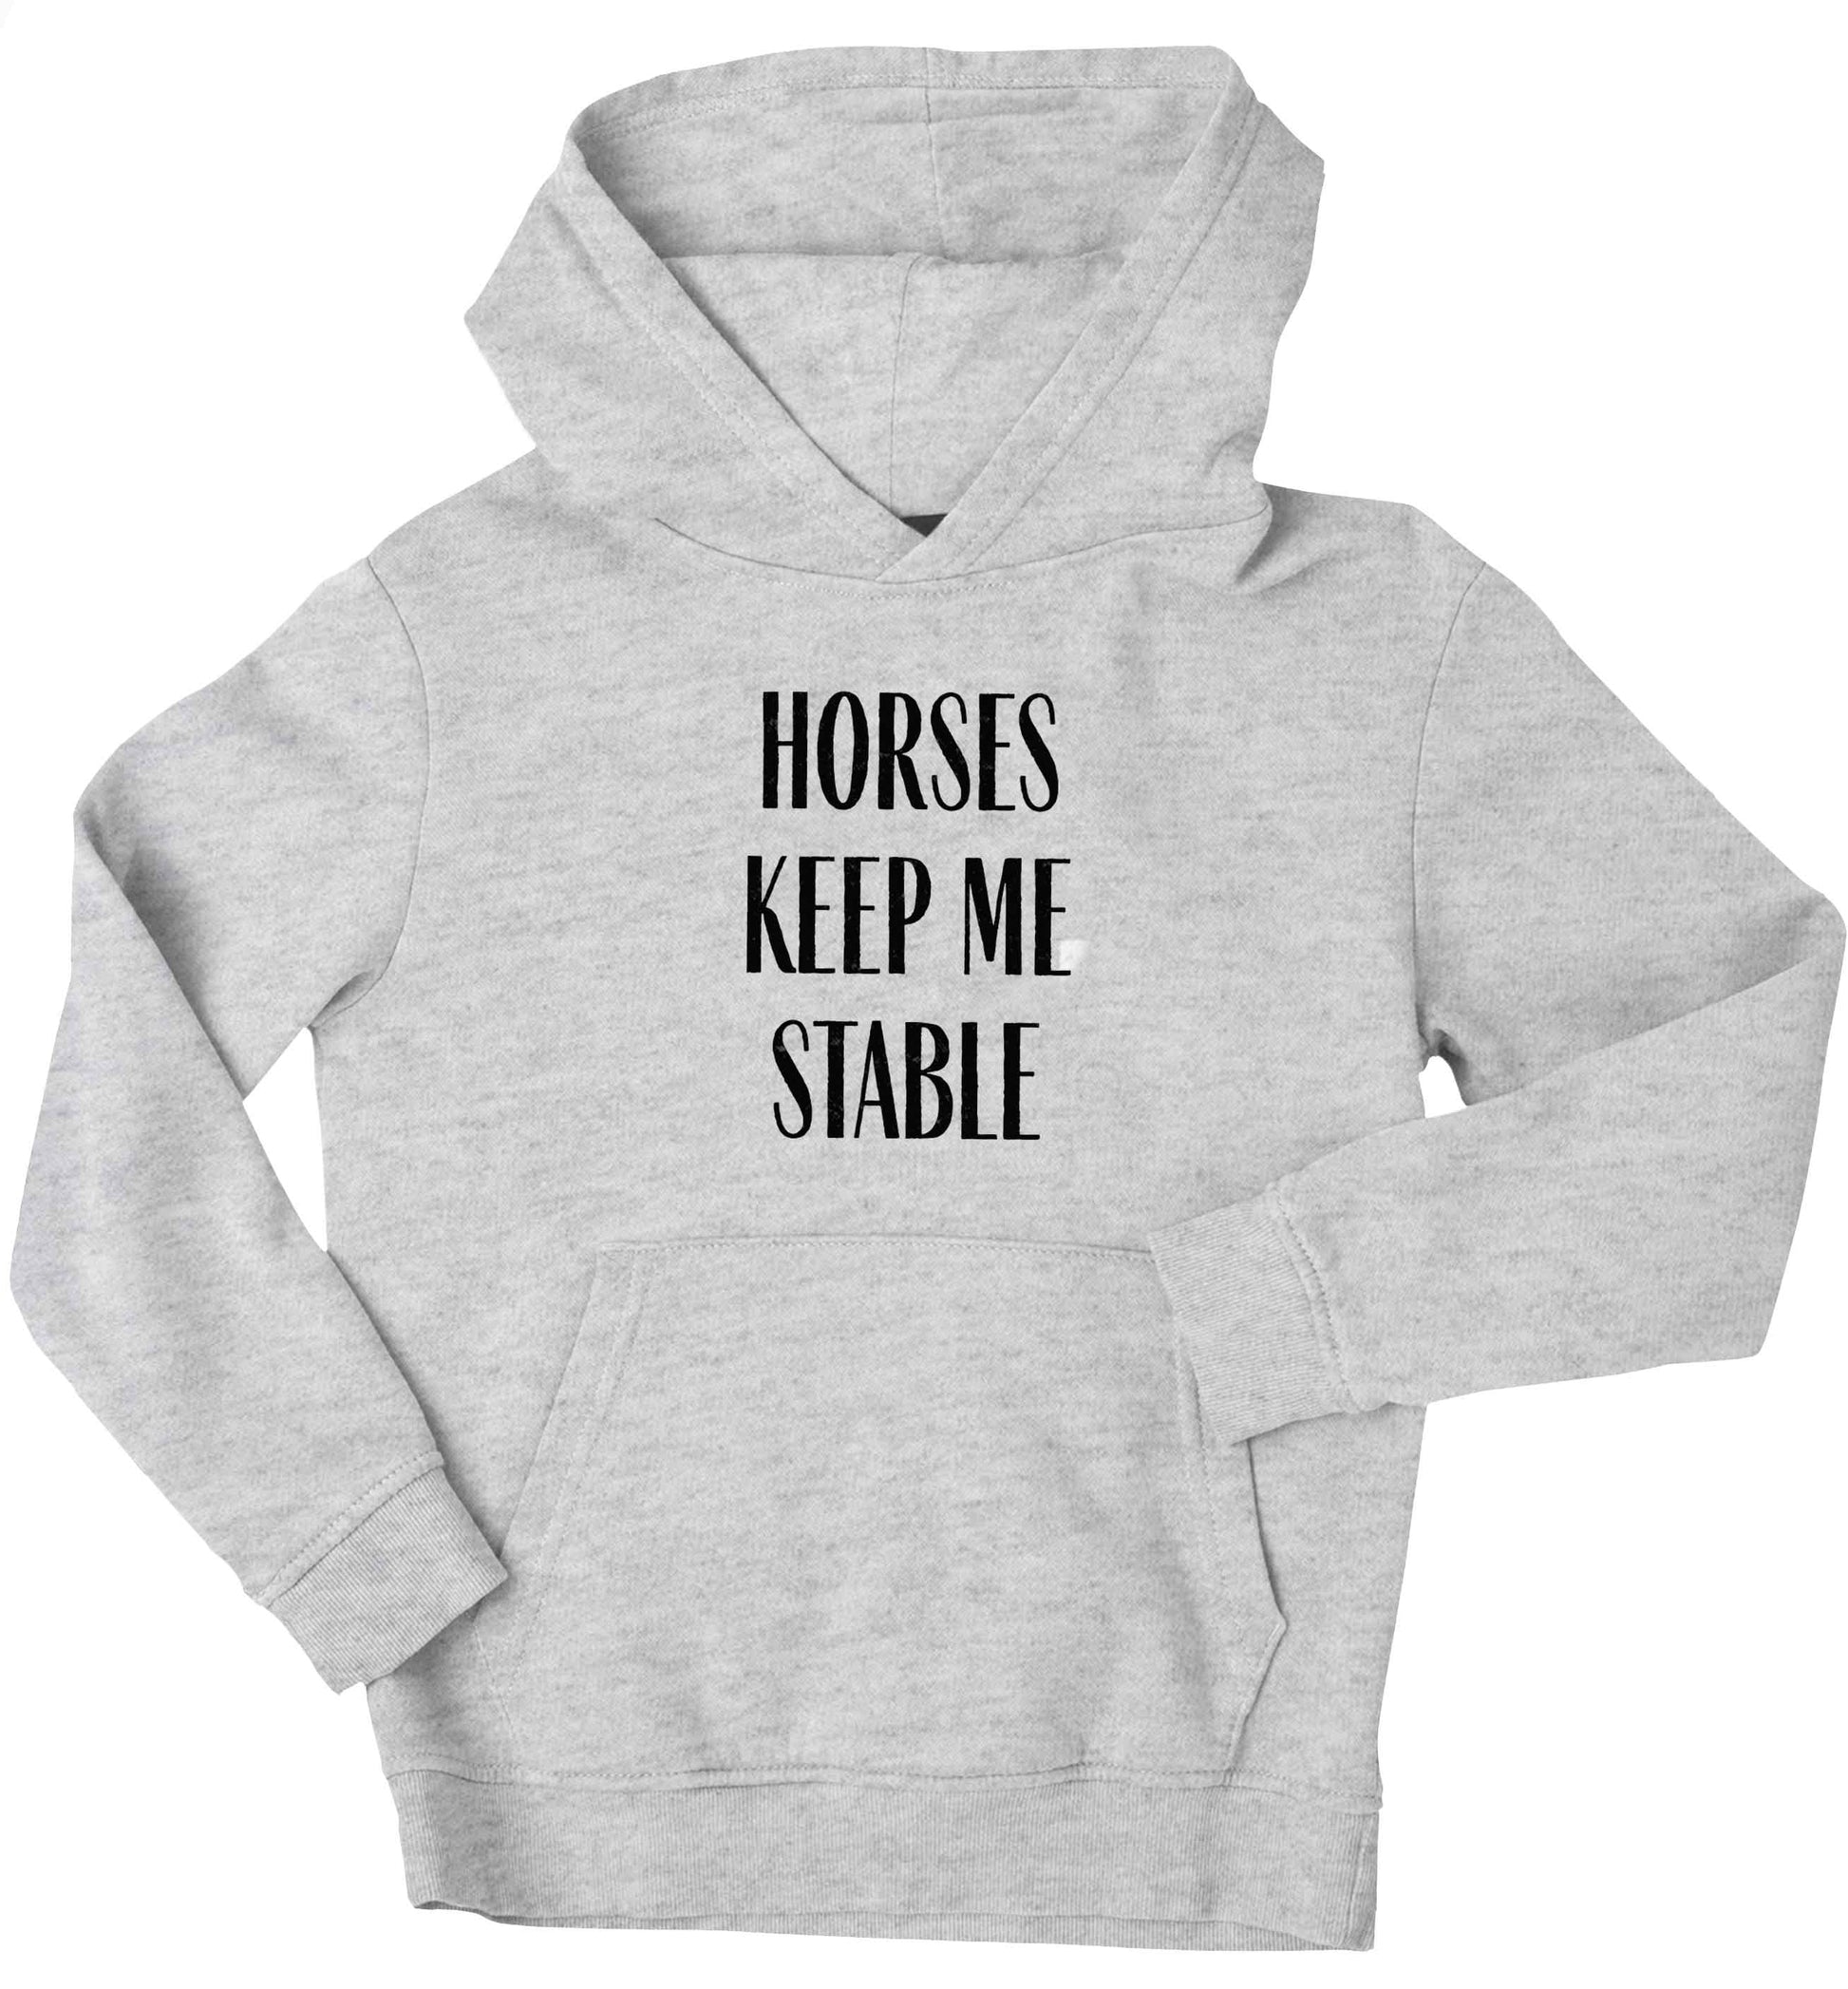 Horses keep me stable children's grey hoodie 12-13 Years